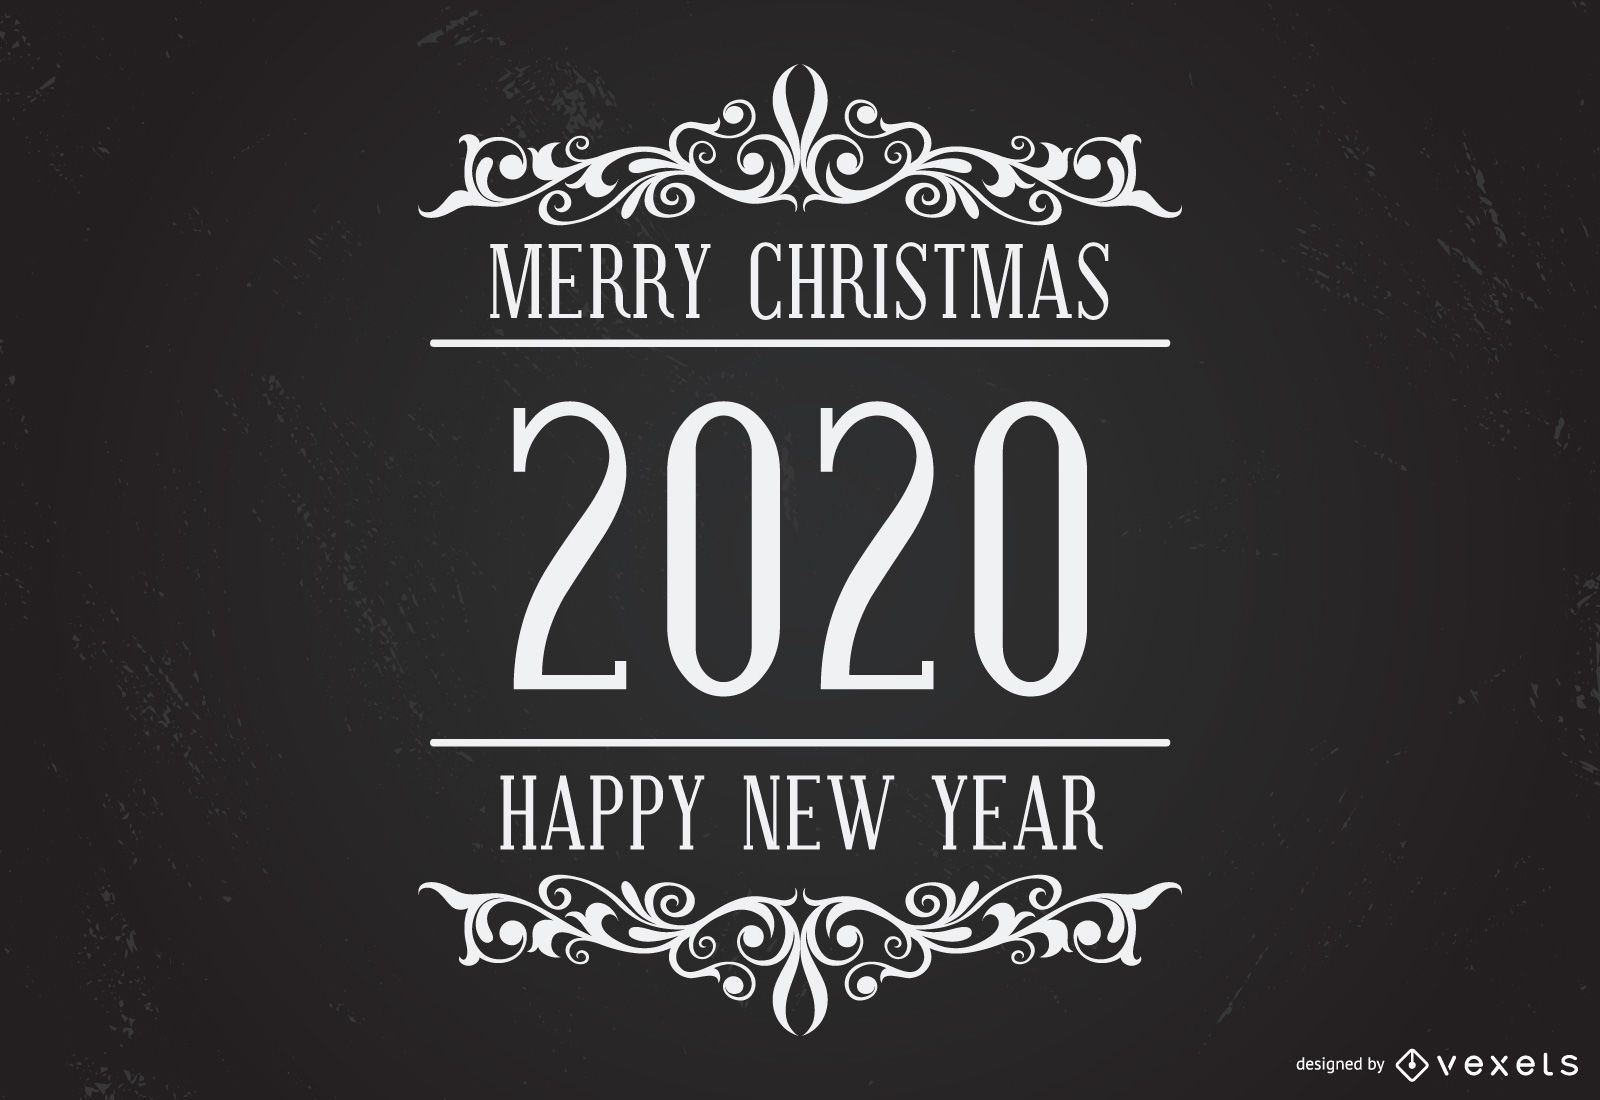 Happy Holidays 2020